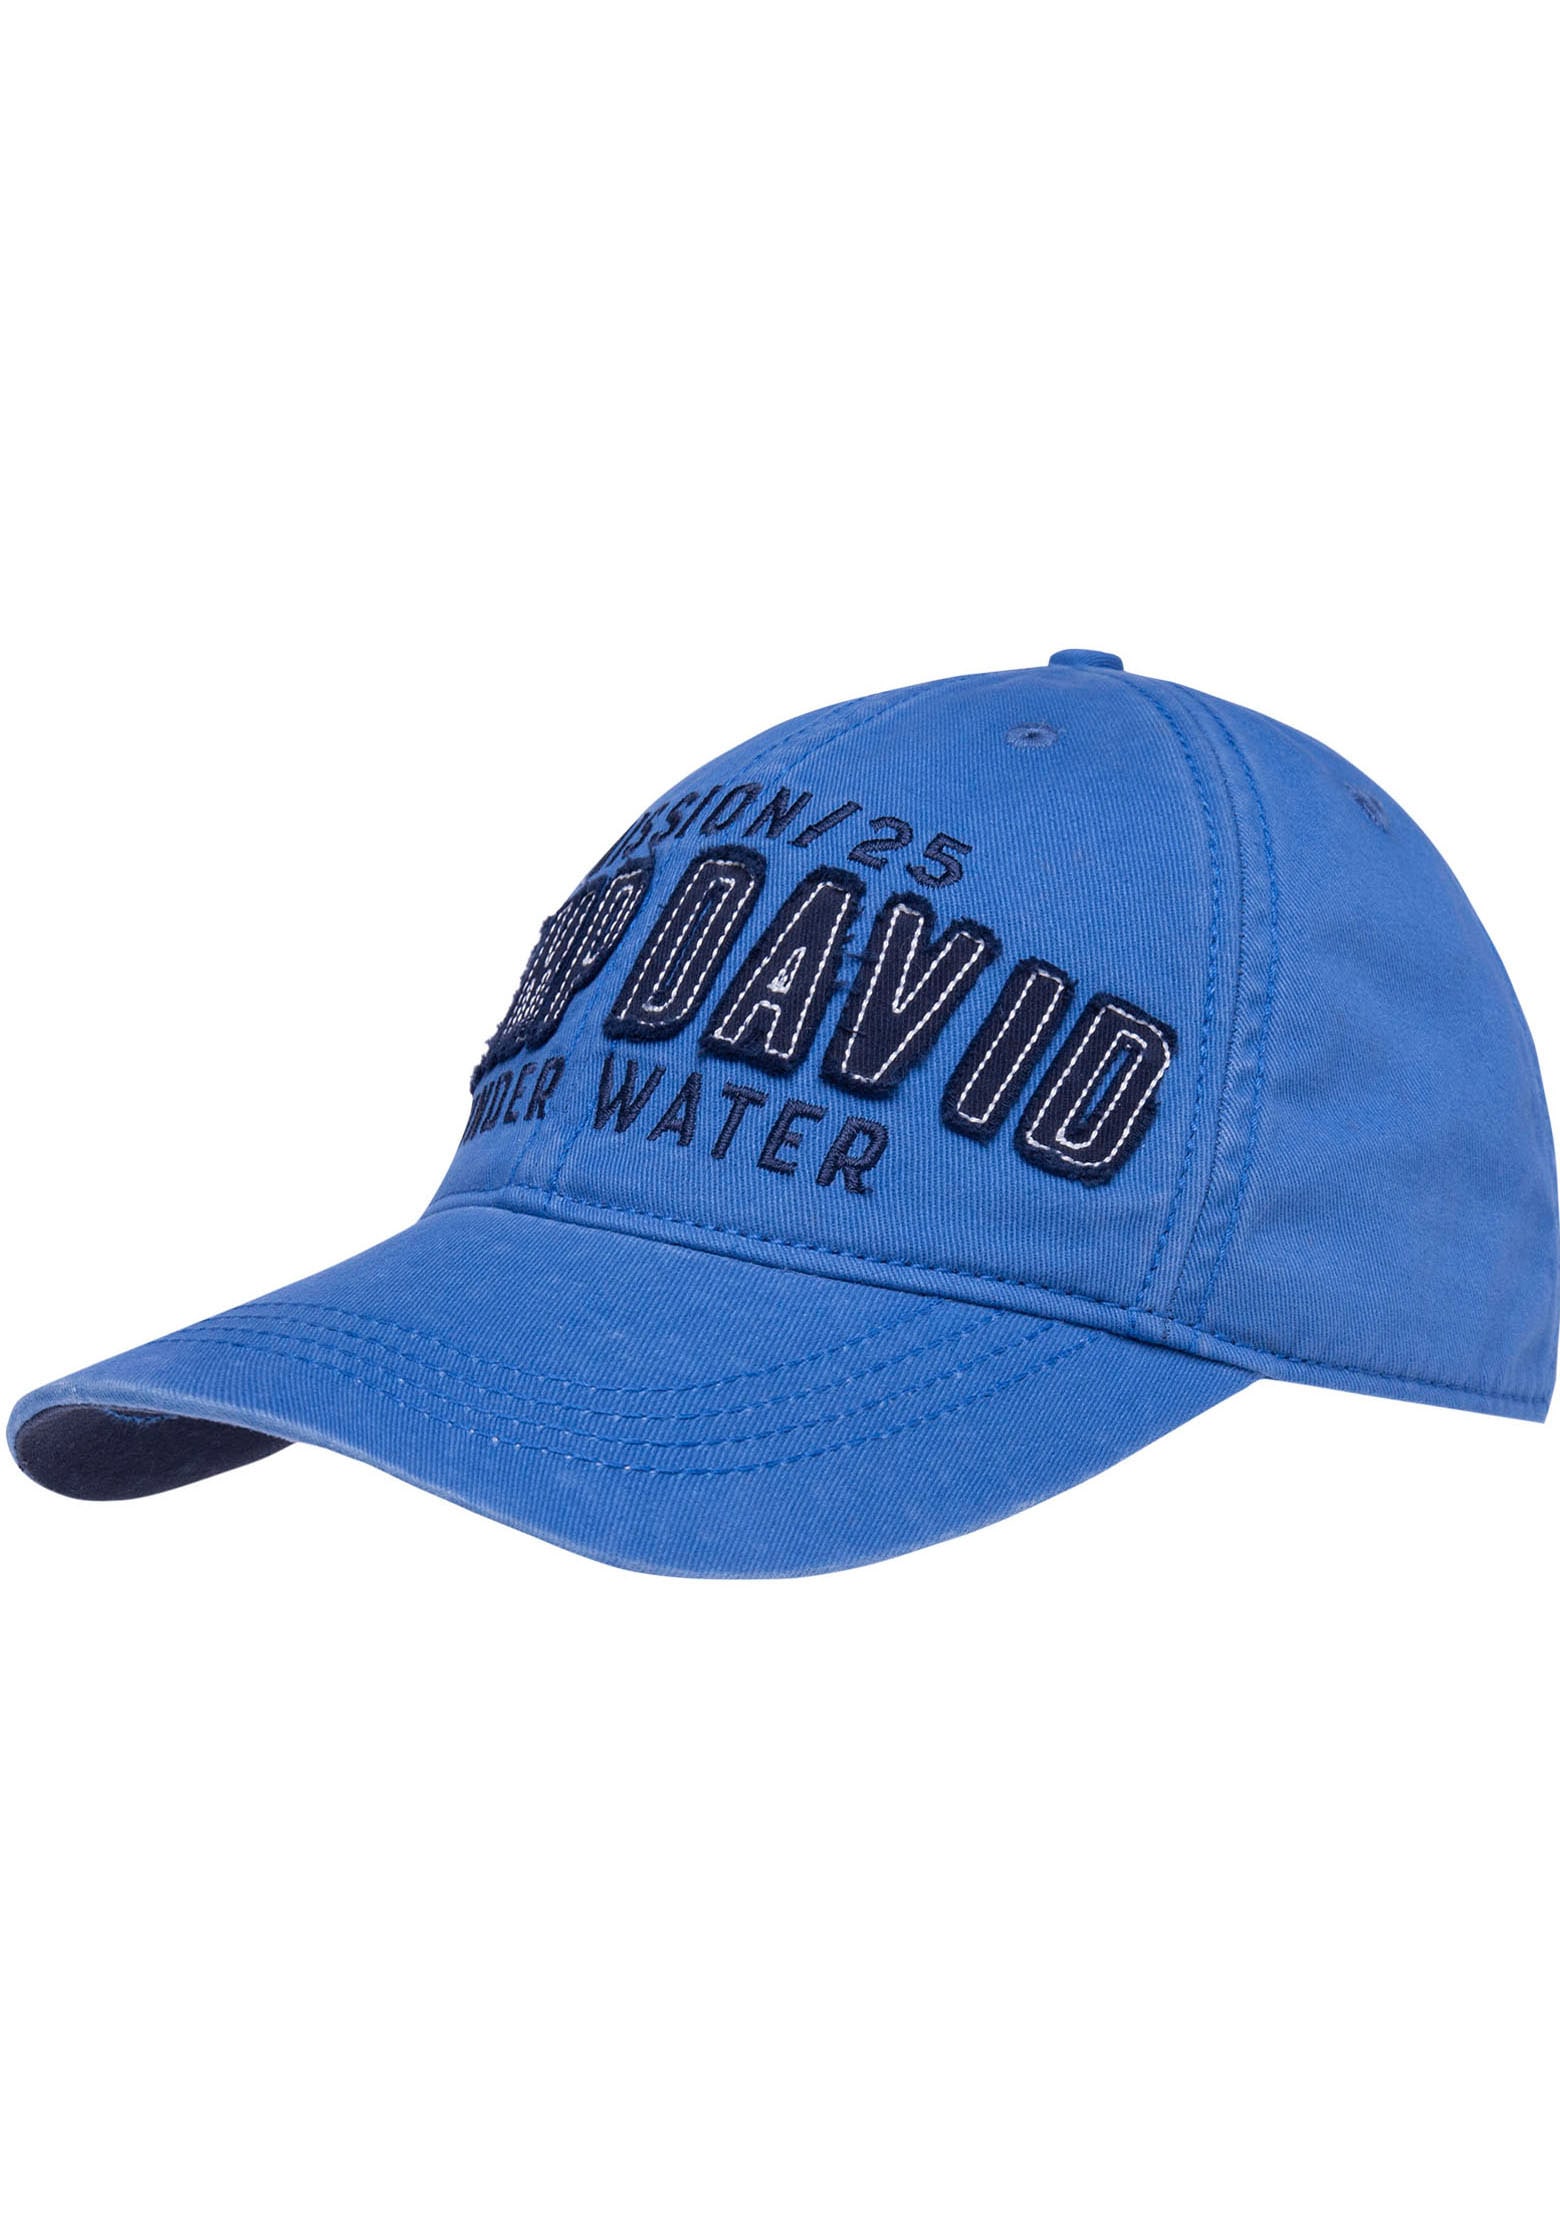 CAMP DAVID Baseball Cap, mit gewaschener Optik online shoppen bei OTTO